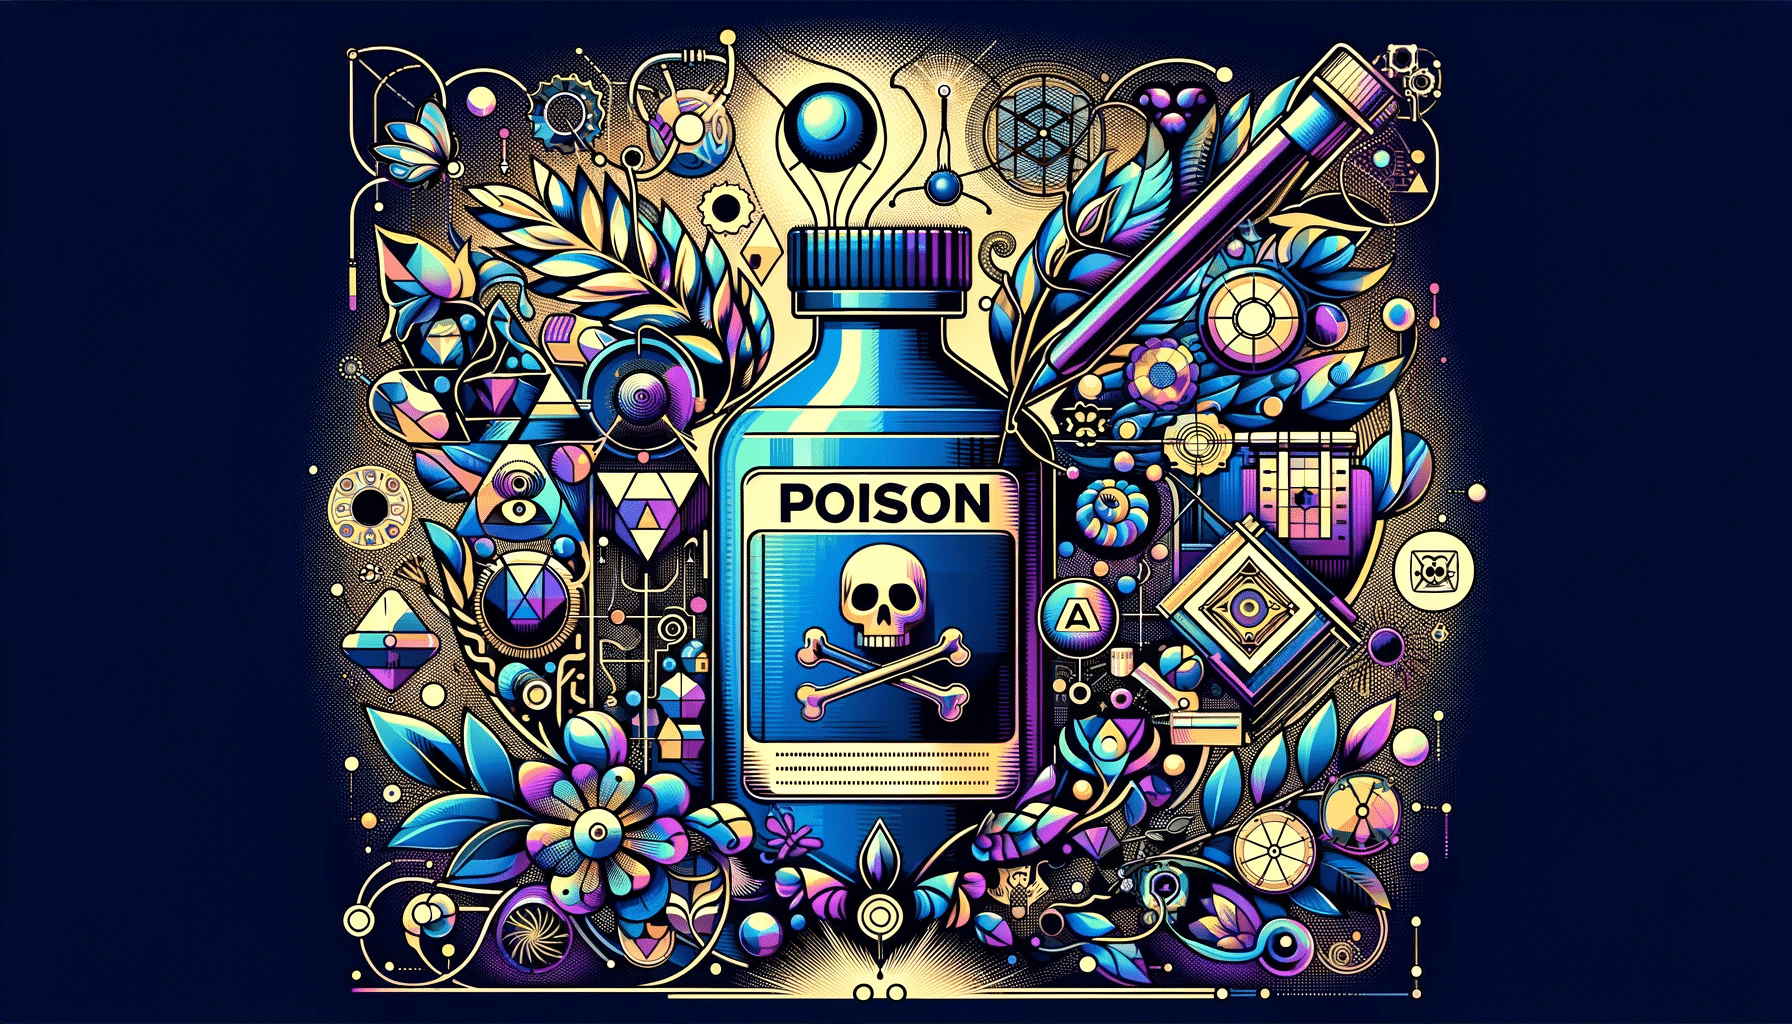 Illustration mélangeant des éléments de poison, comme une substance toxique symbolique, avec des œuvres d'art protégées ou altérées par ce poison, et des motifs représentant des IA génératives, évoquant la défense des créations artistiques.